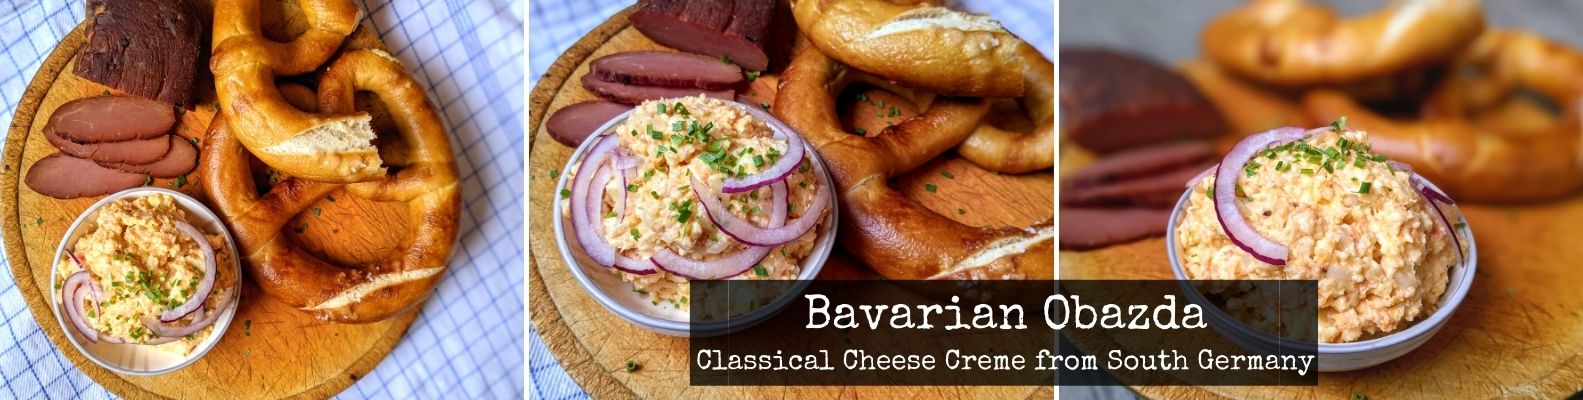 Recipe for Bavarian Obazda